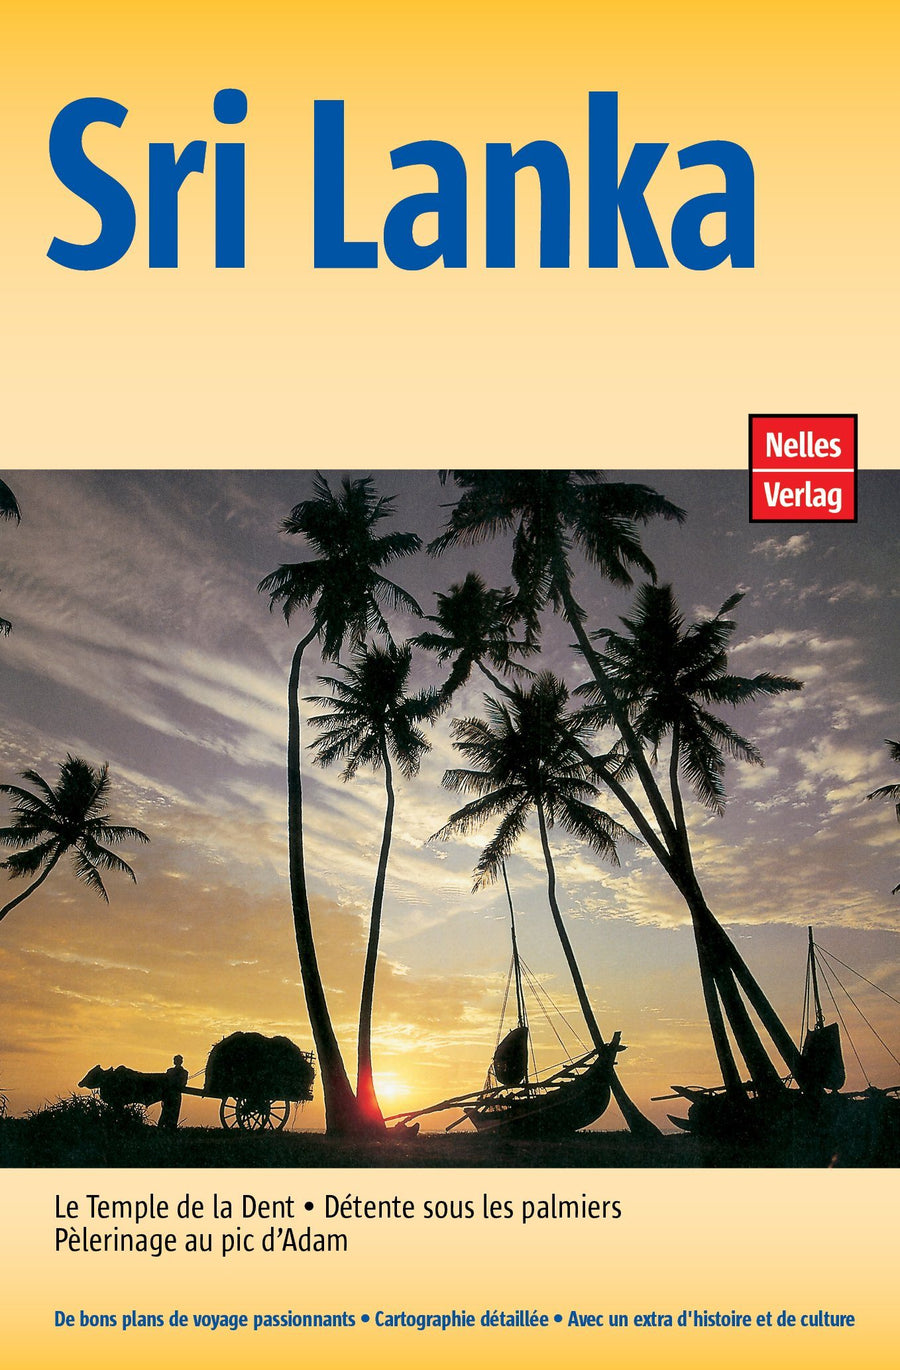 Guide de voyage - Sri Lanka | Nelles Guide guide de voyage Nelles Guide 